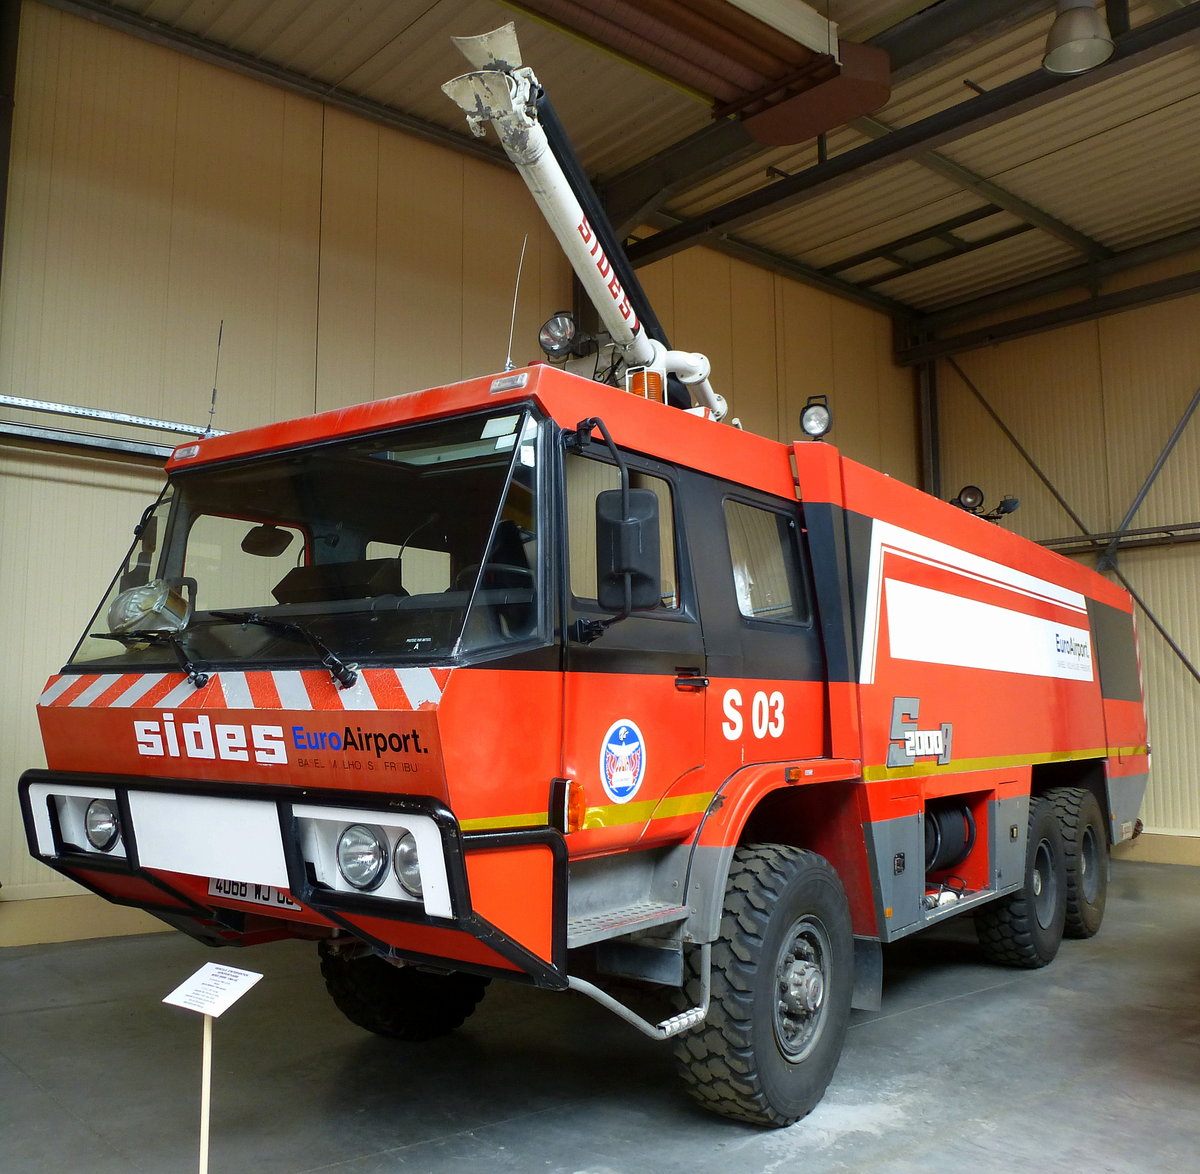 Mack-Renault 540, Flughafenfeuerwehr, von 1994-2015 im Dienst des Euro-Airport Basel-Mülhausen, Löschmitteltank mit 10100 Litern, Feuerwehrmuseum Ferrette, Mai 2016